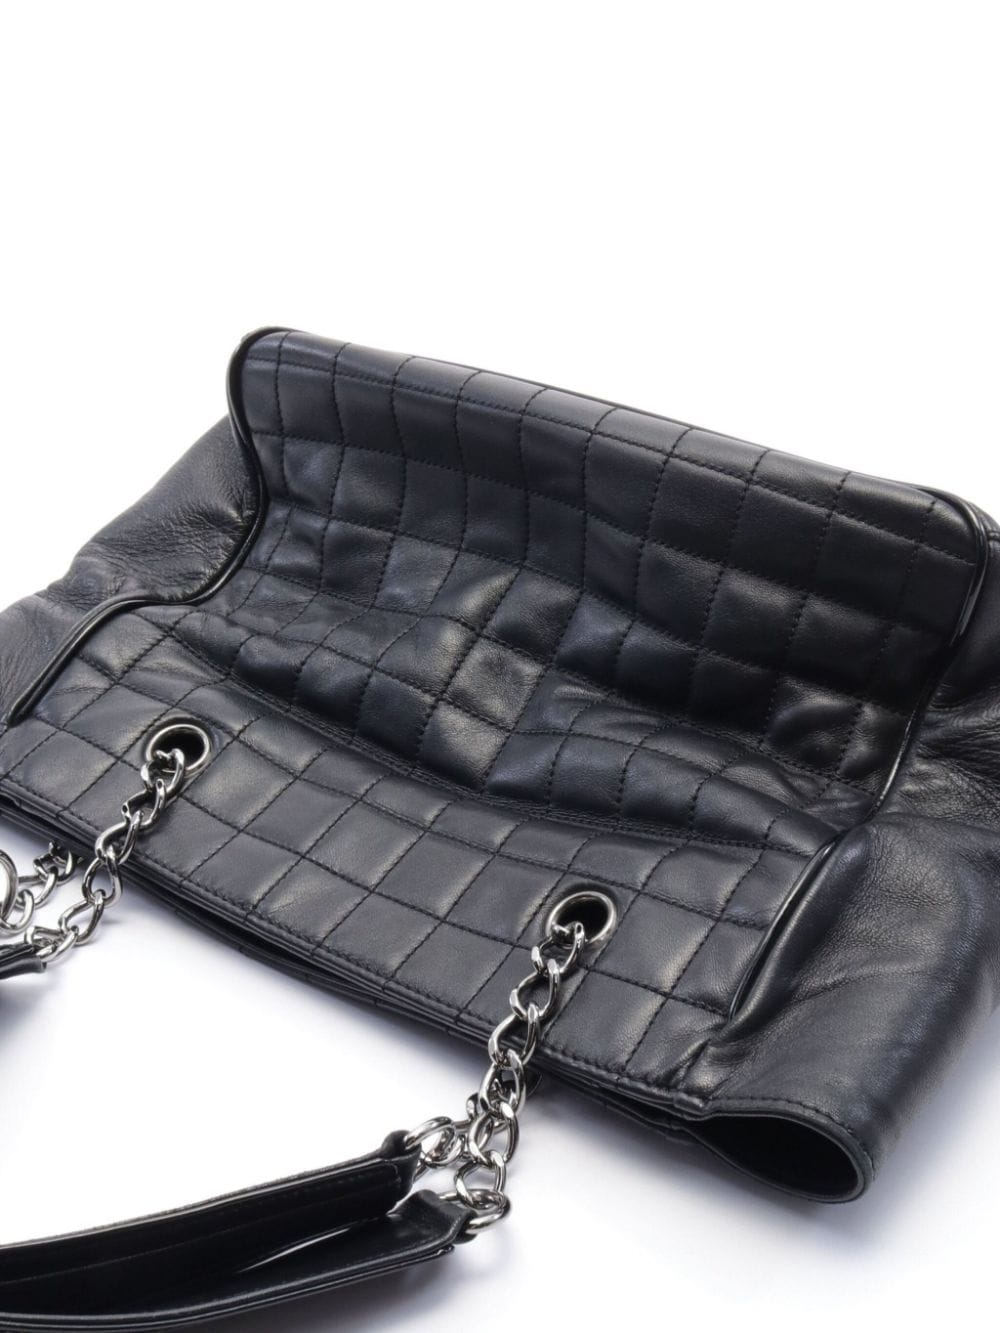 Pre-owned Chanel 2005-2006 Cc Camellia No.5 Shopper Tote Bag In Black